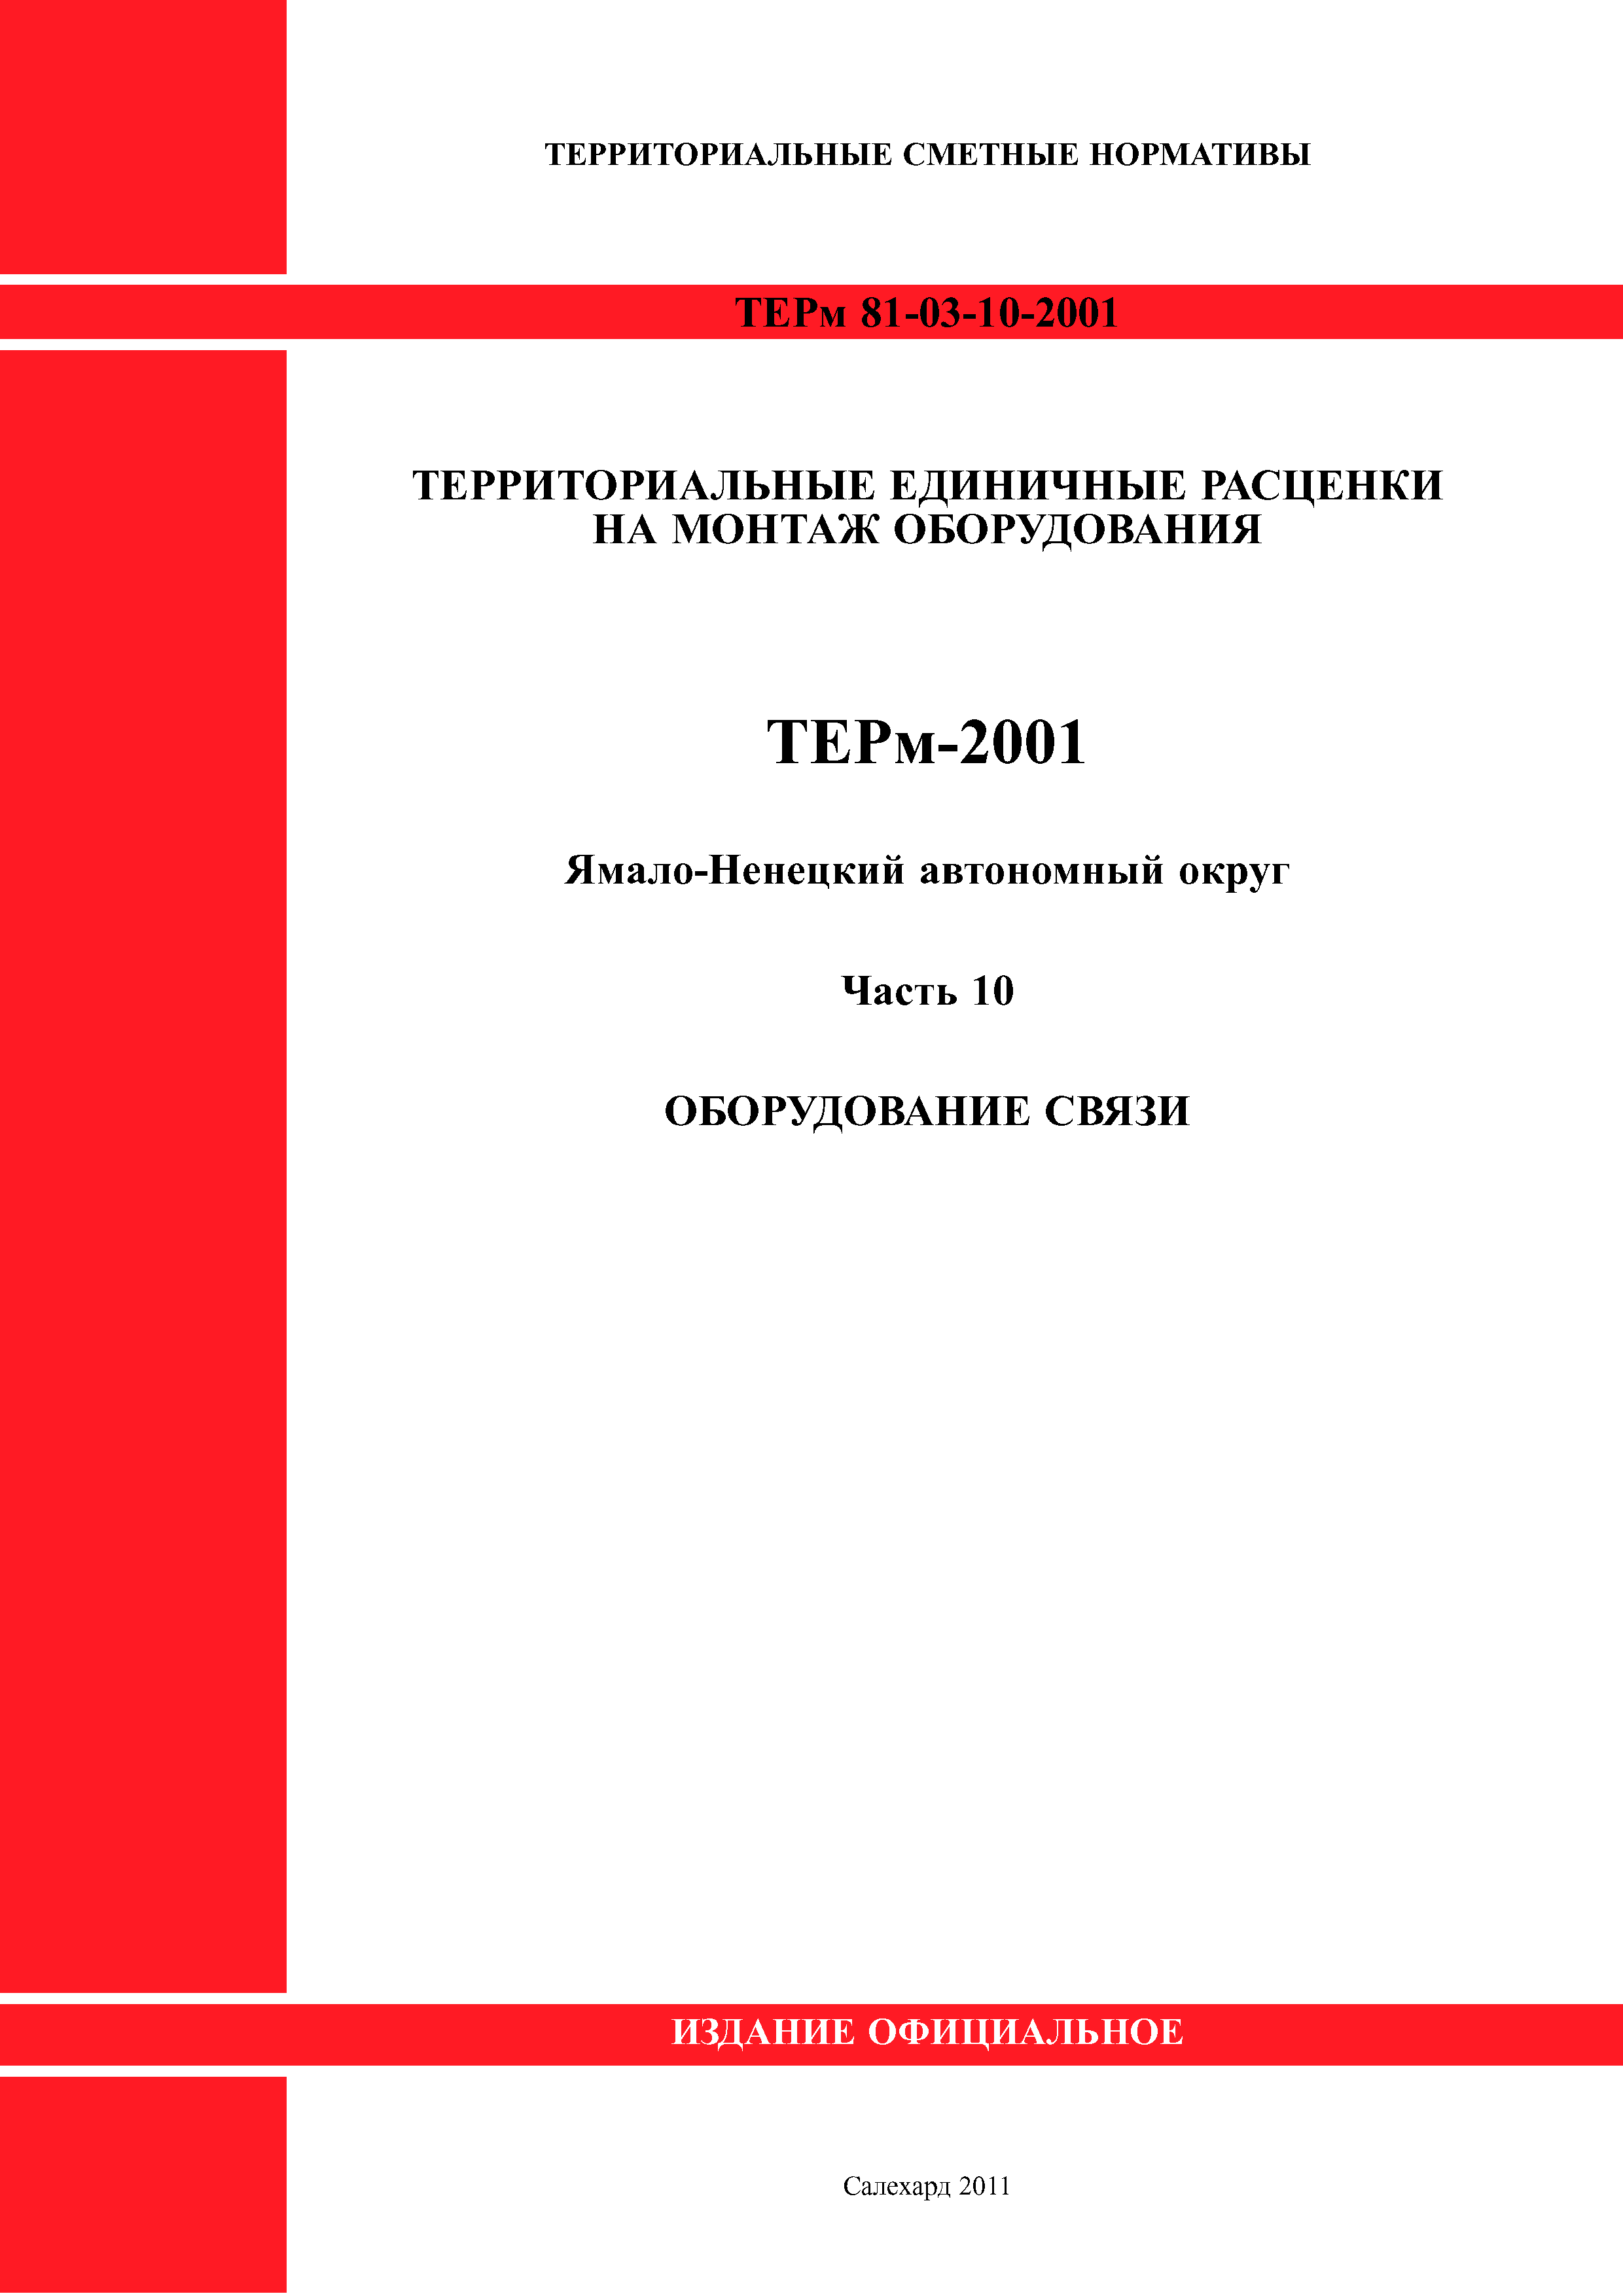 ТЕРм Ямало-Ненецкий автономный округ 10-2001